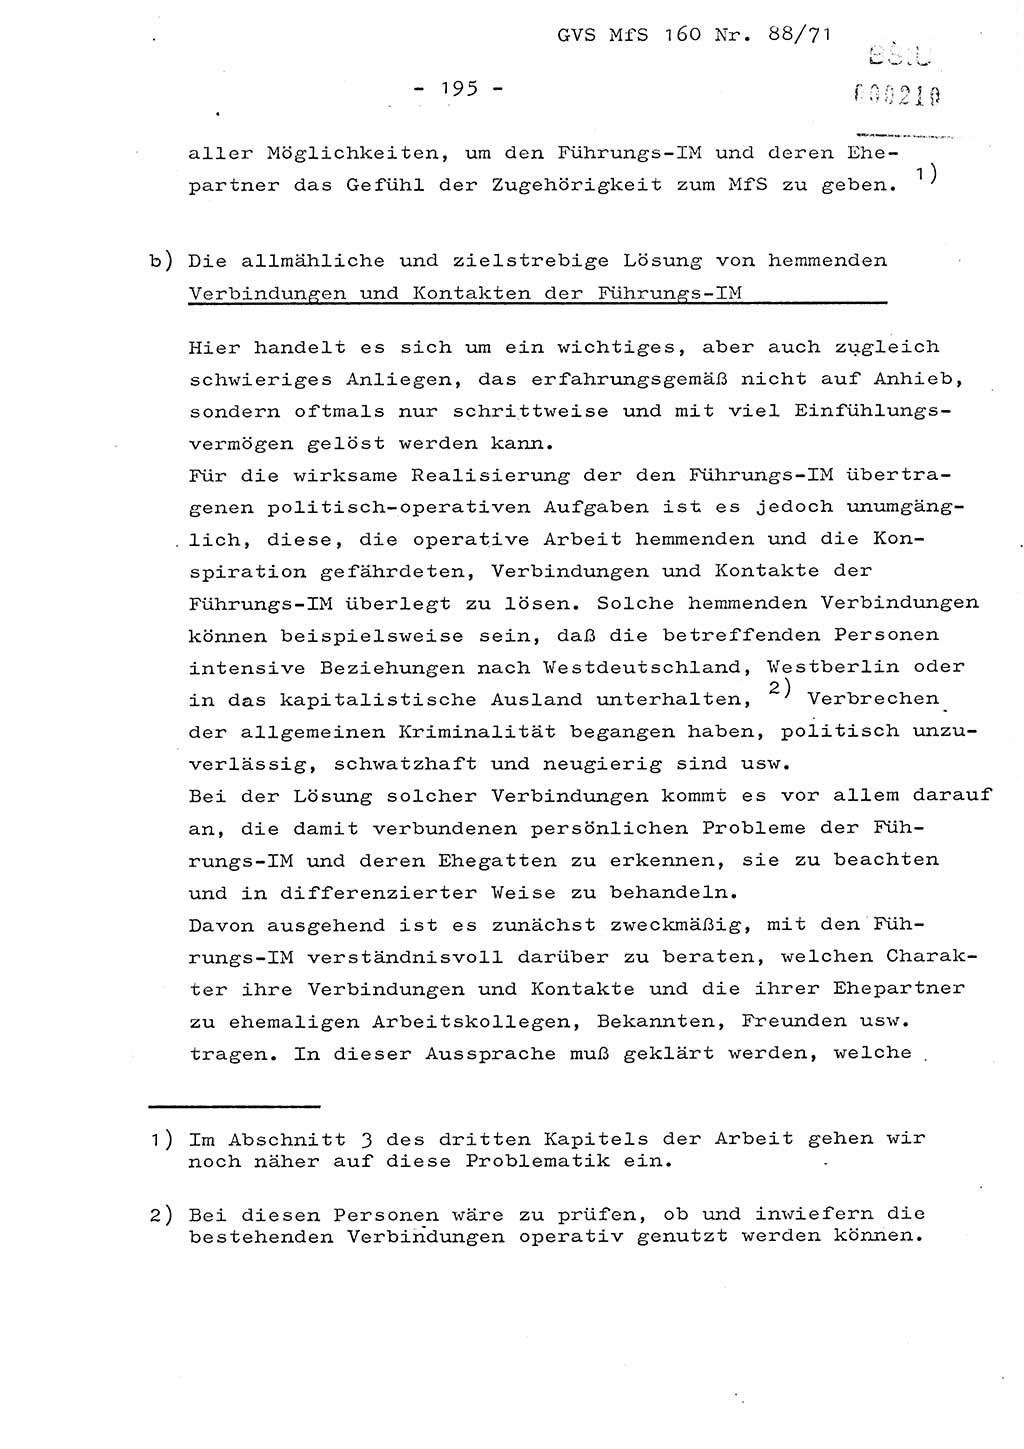 Dissertation Oberstleutnant Josef Schwarz (BV Schwerin), Major Fritz Amm (JHS), Hauptmann Peter Gräßler (JHS), Ministerium für Staatssicherheit (MfS) [Deutsche Demokratische Republik (DDR)], Juristische Hochschule (JHS), Geheime Verschlußsache (GVS) 160-88/71, Potsdam 1972, Seite 195 (Diss. MfS DDR JHS GVS 160-88/71 1972, S. 195)